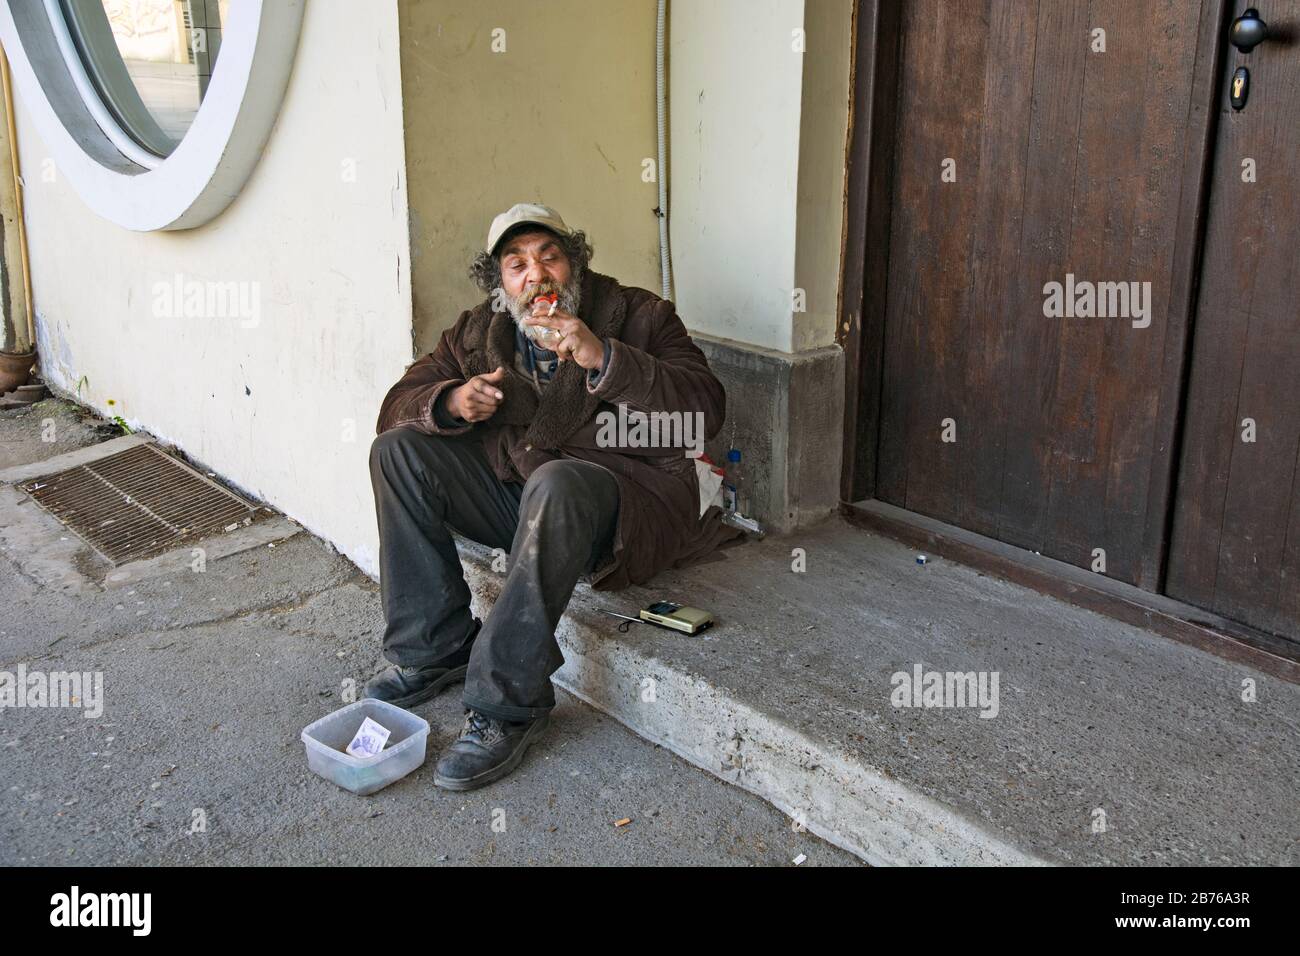 Zrenjanin, Serbien, 12. April 2018. Ein Bettler, der Zeit auf der Straße verbringt und auf jemanden wartet, der ihm etwas Geld gibt. Stockfoto